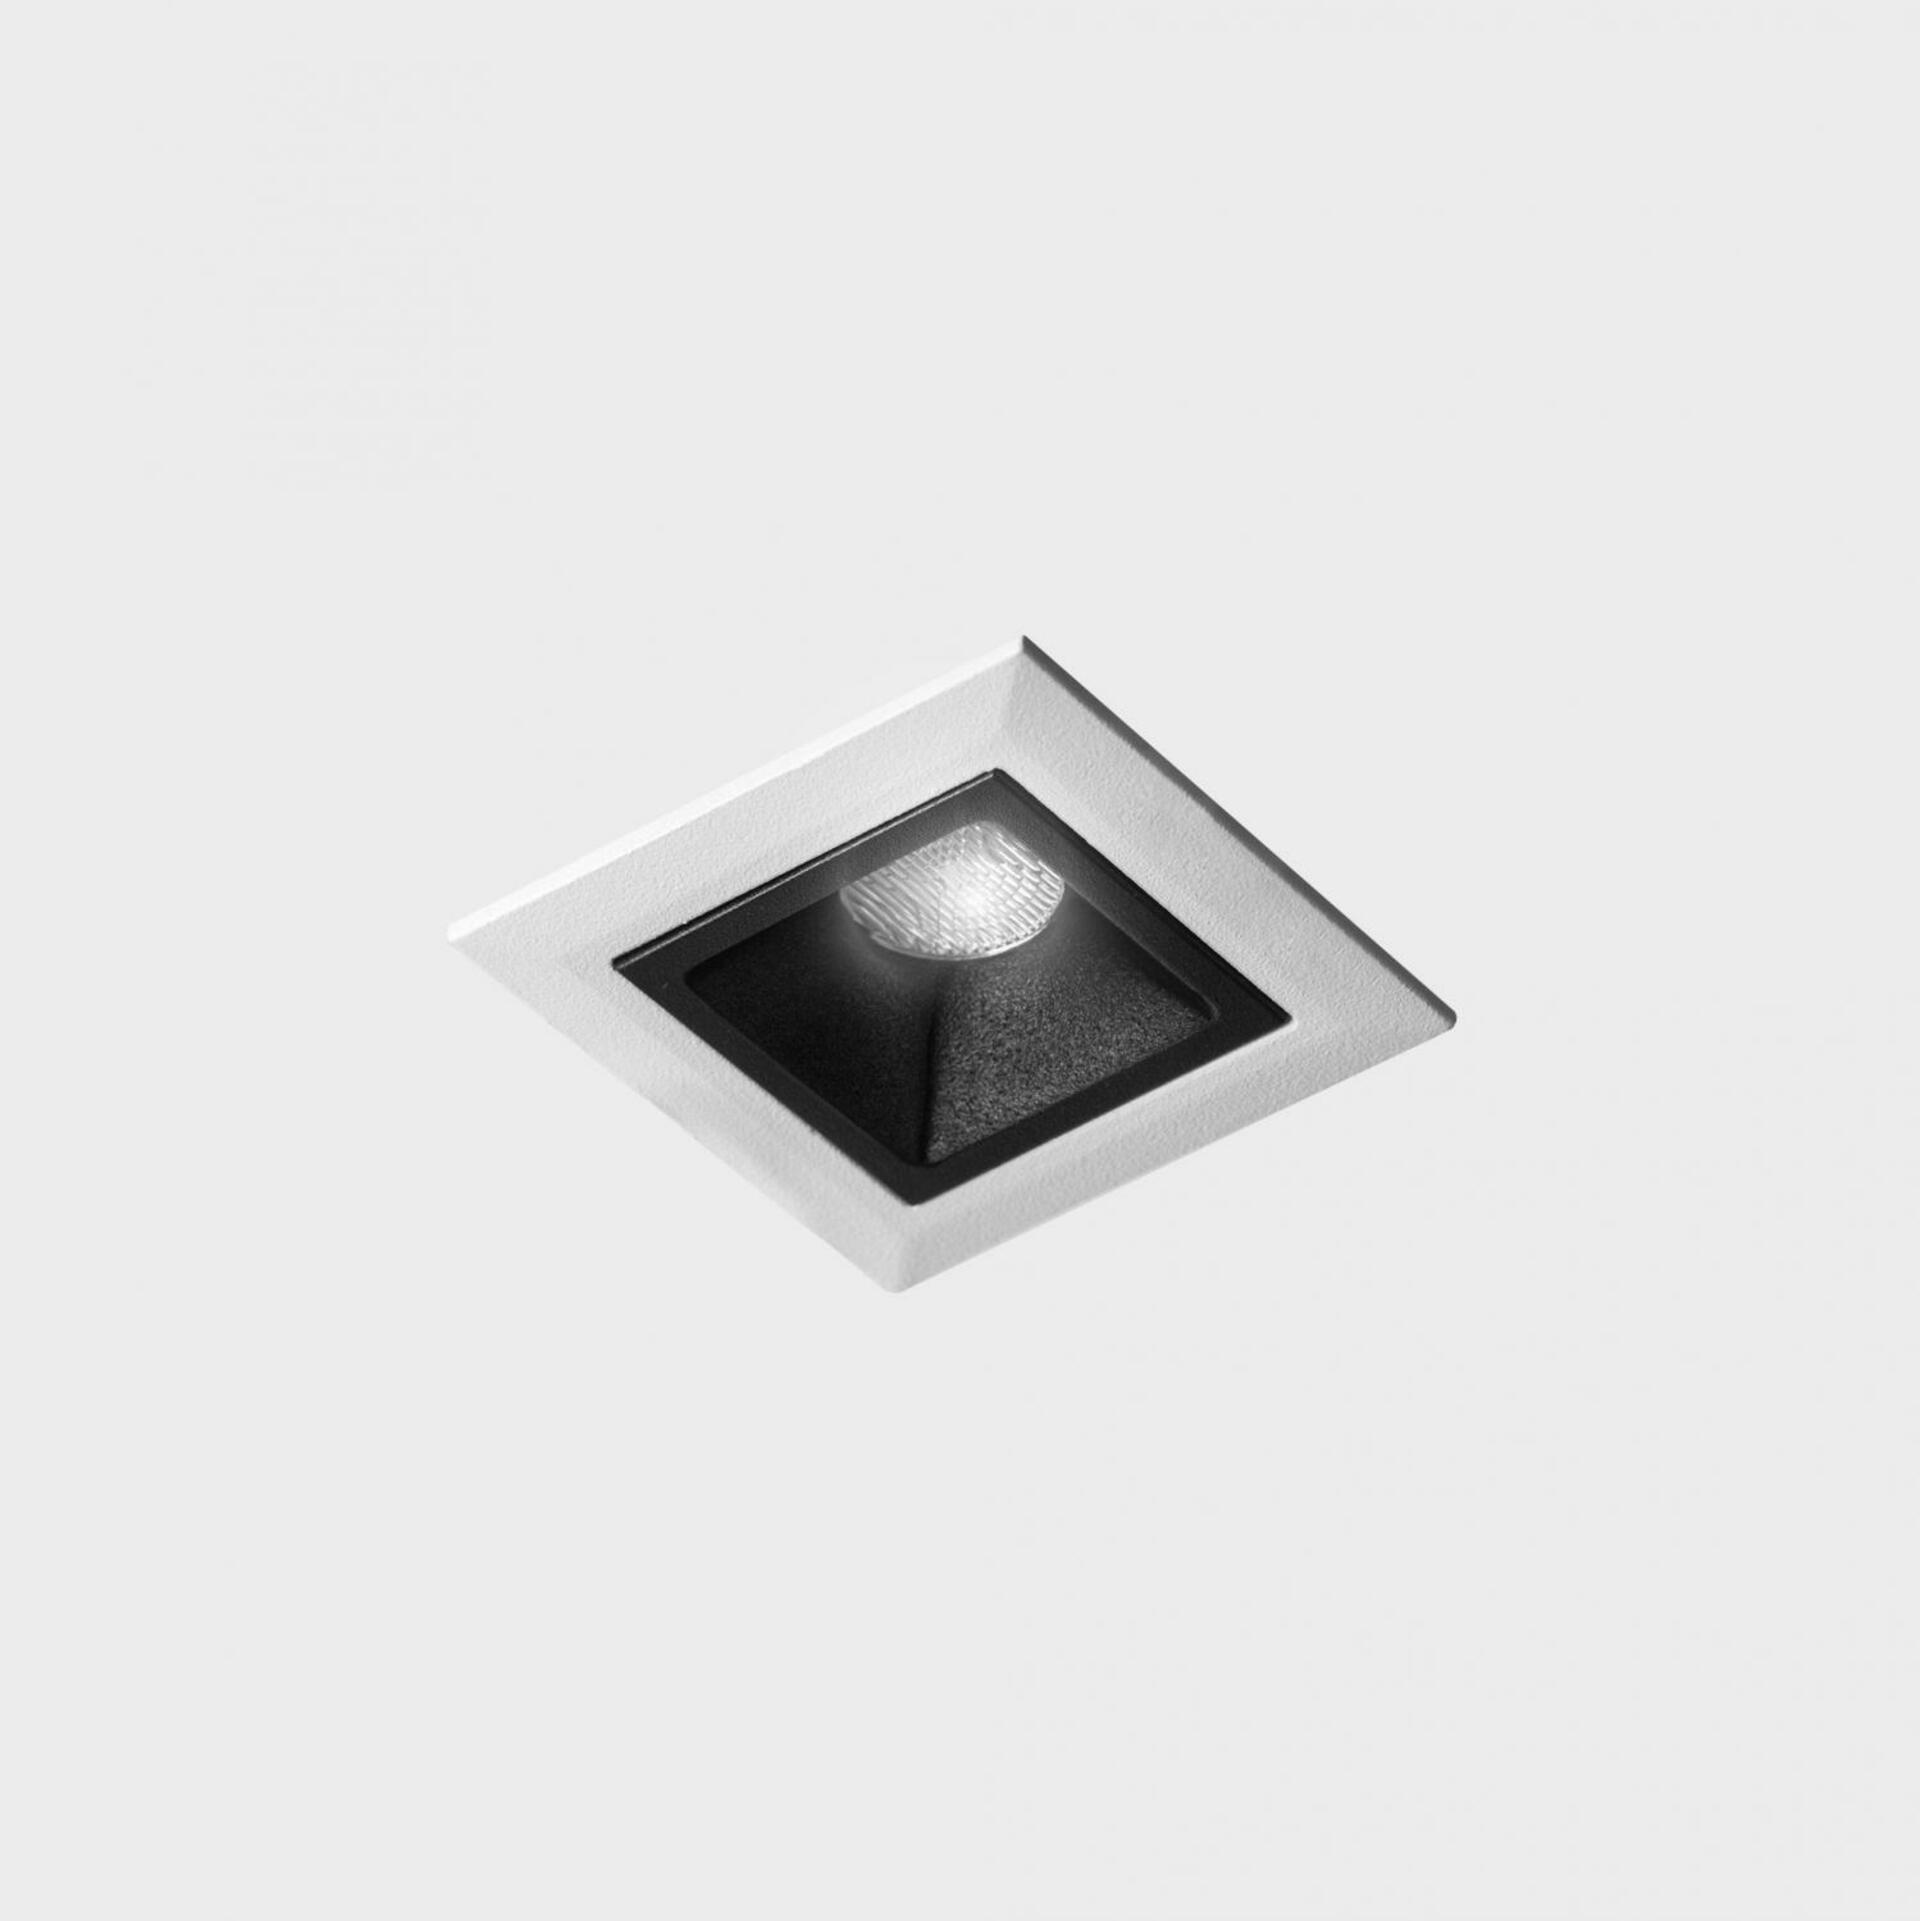 KOHL LIGHTING KOHL-Lighting NSES zapuštěné svítidlo s rámečkem 45x45 mm bílá-černá 2 W CRI 90 2700K PUSH